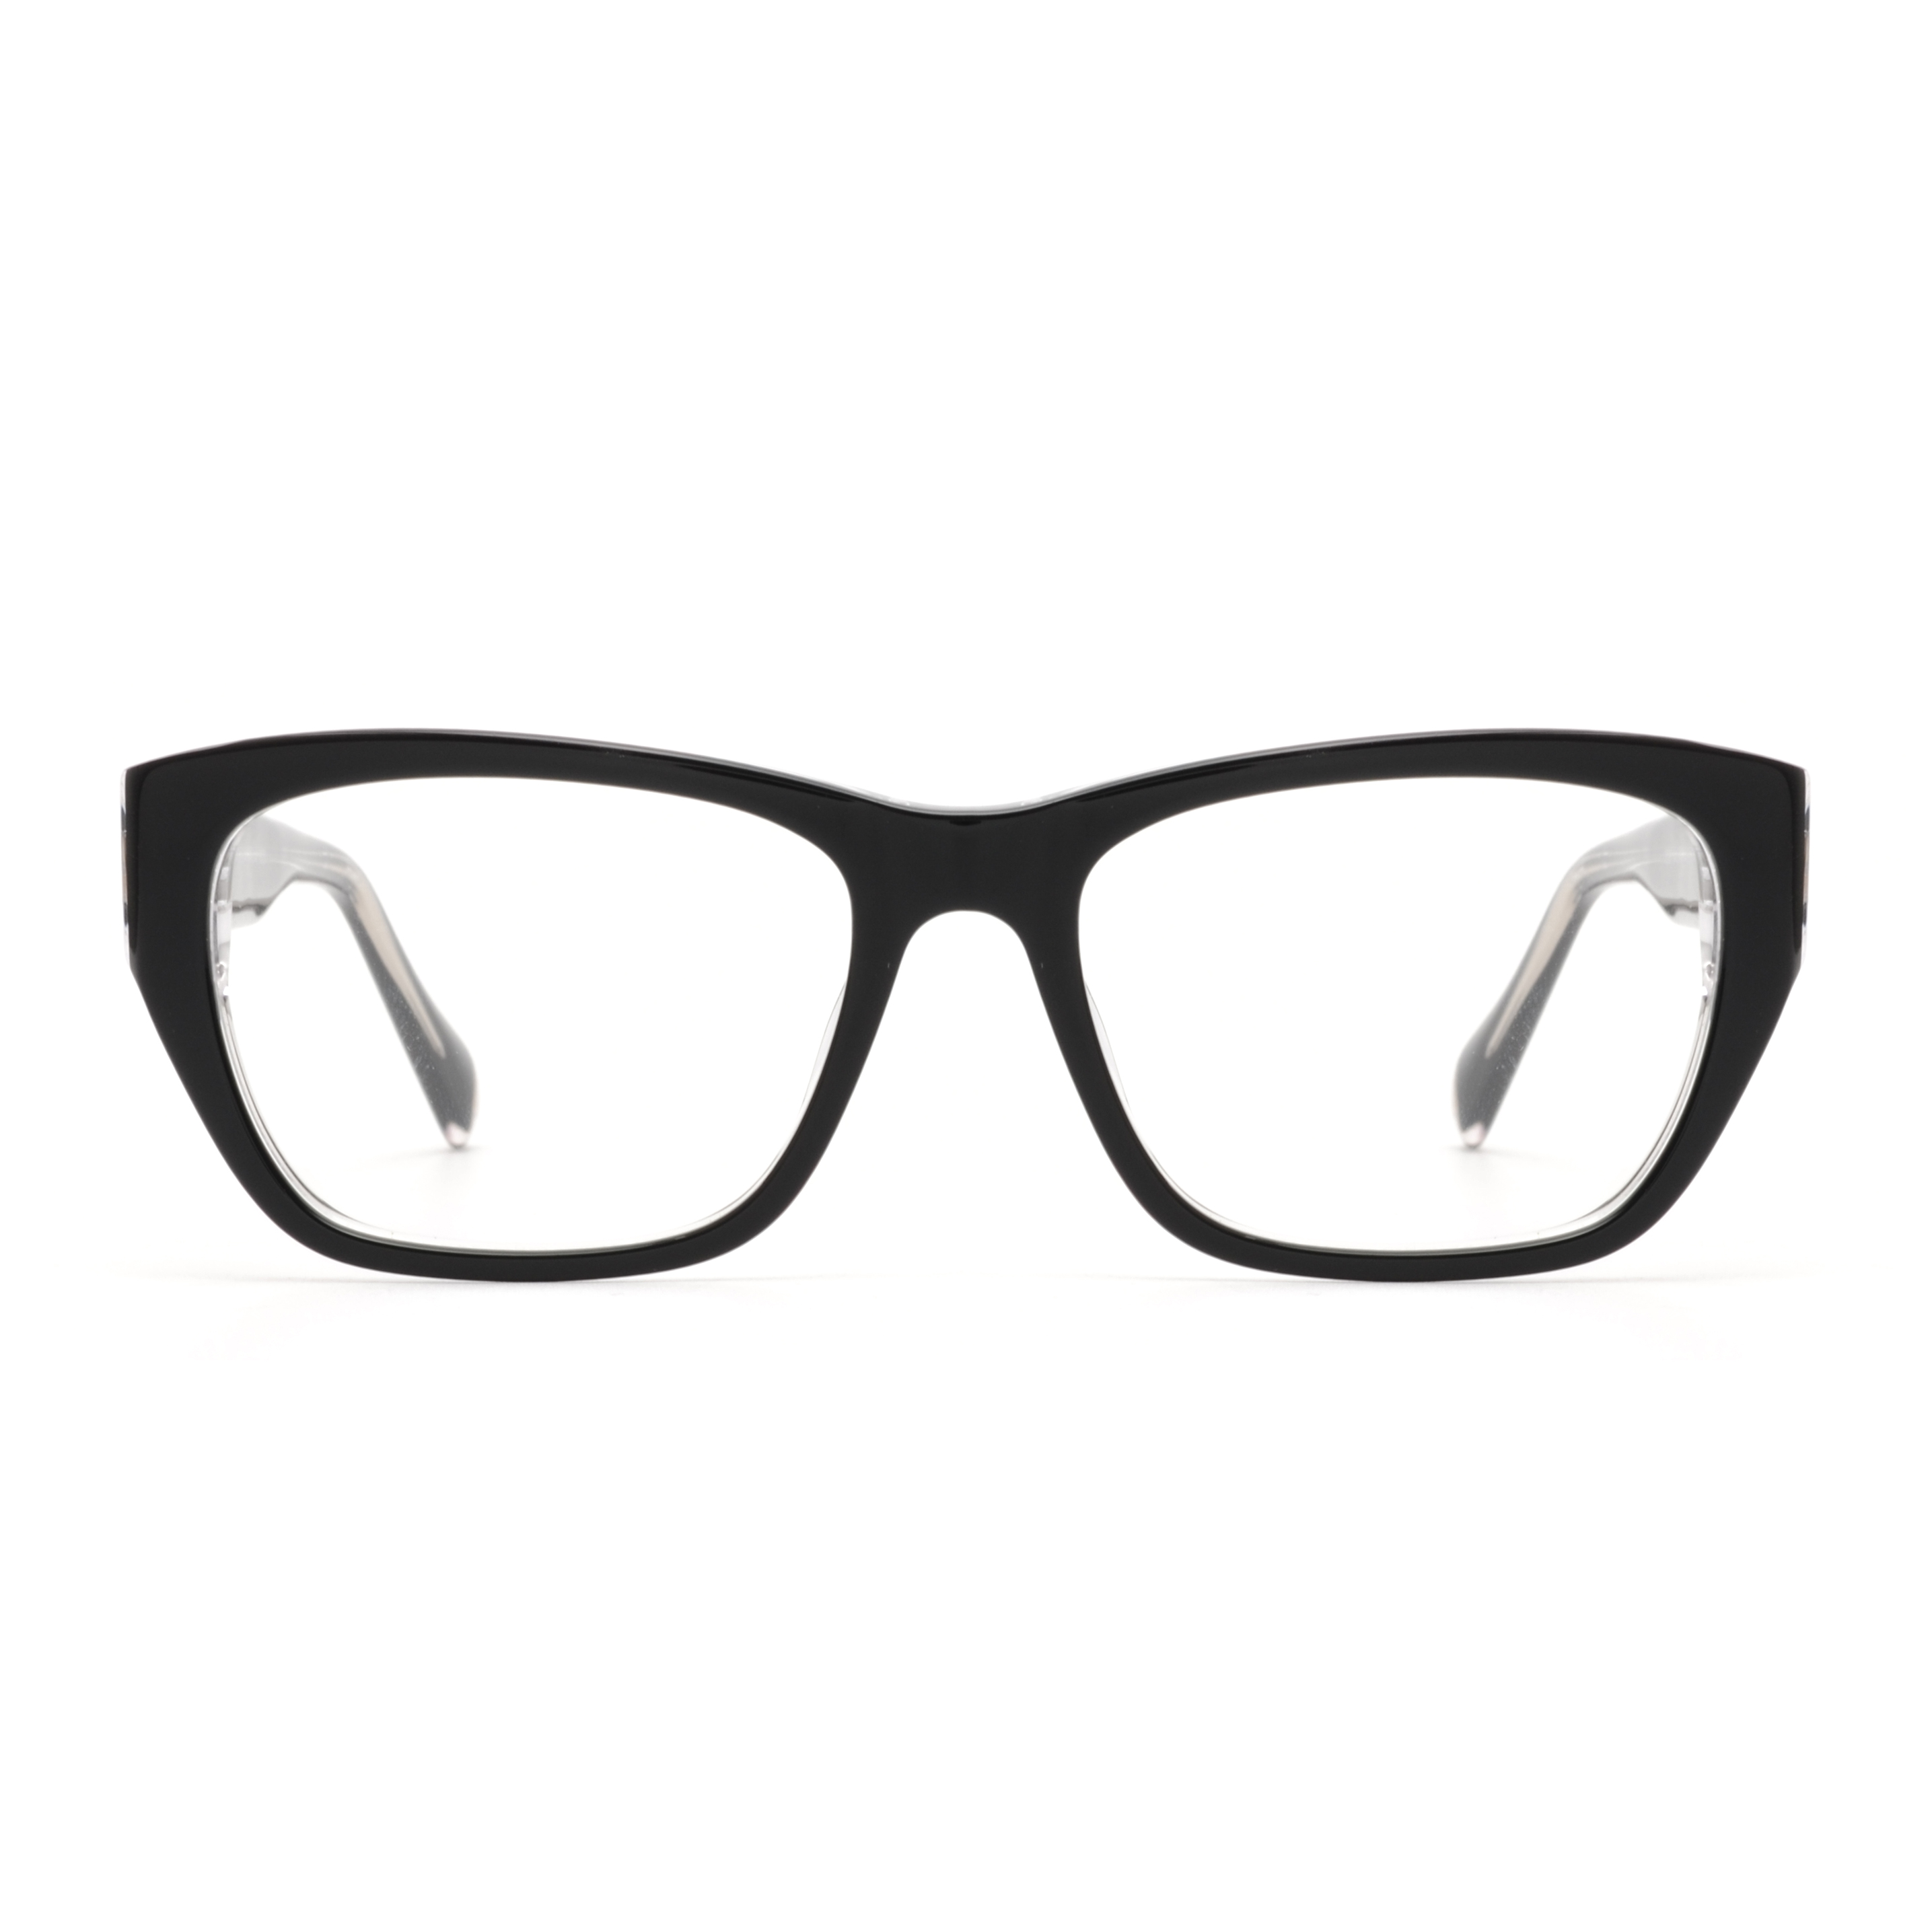 Joysee 2021 1536 New Classic Quality Man Acetate Frames Optical Glasses For Unisex Women Custom Logo Eyeglasses Frames